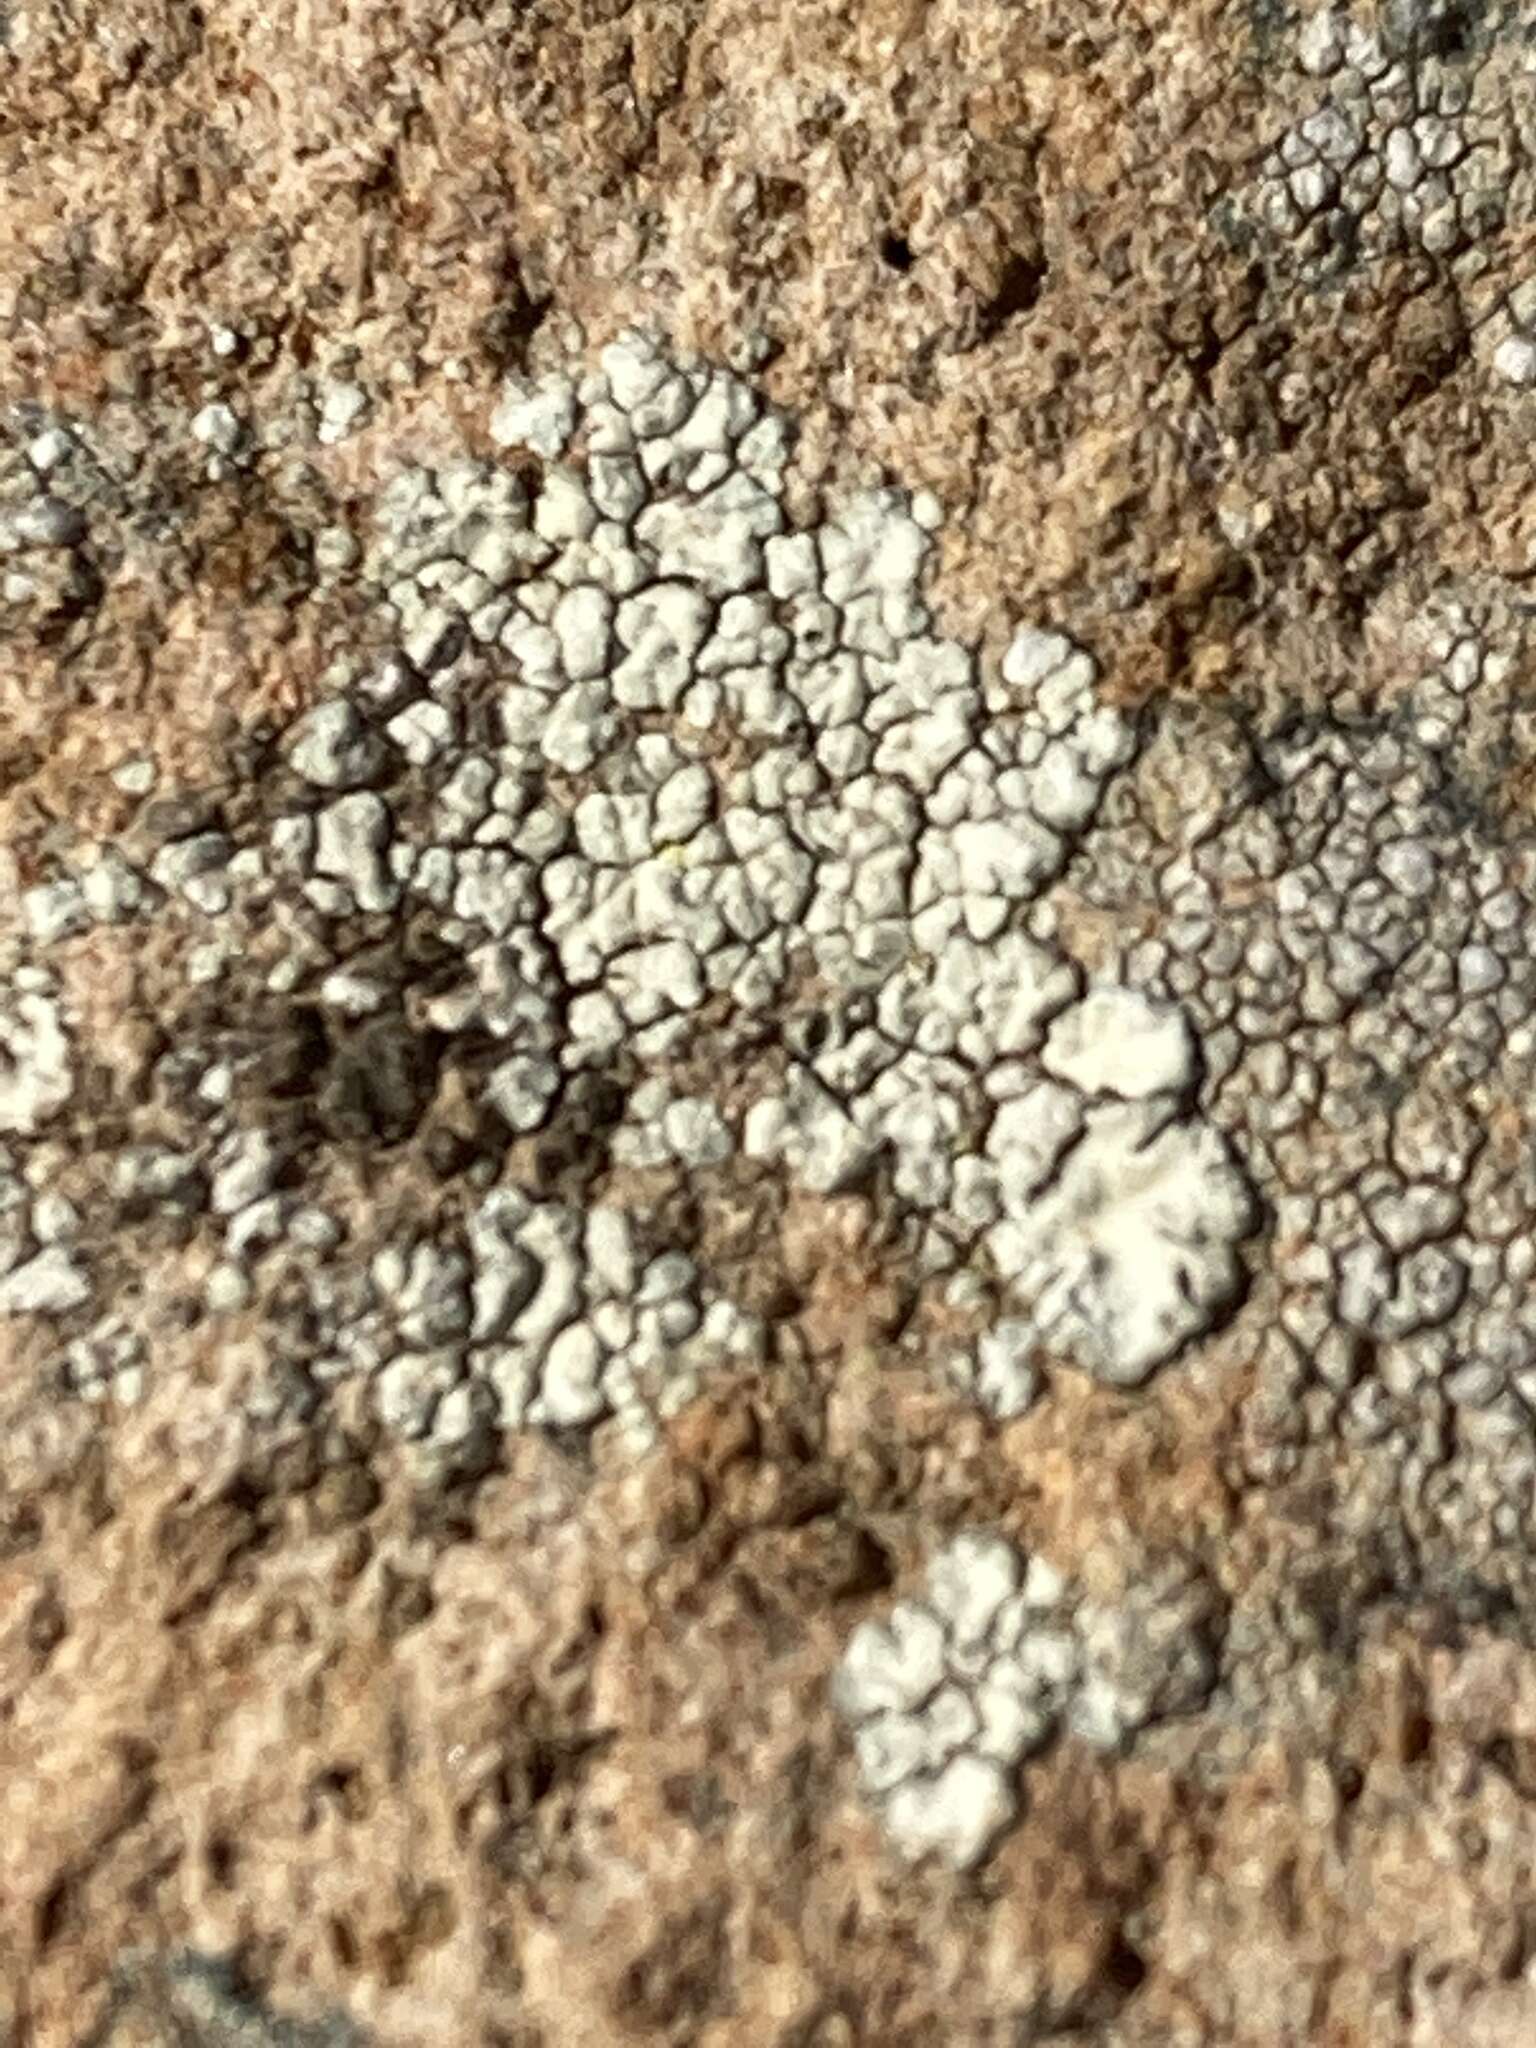 Image of Hoary cobblestone lichen;   Cracked lichen